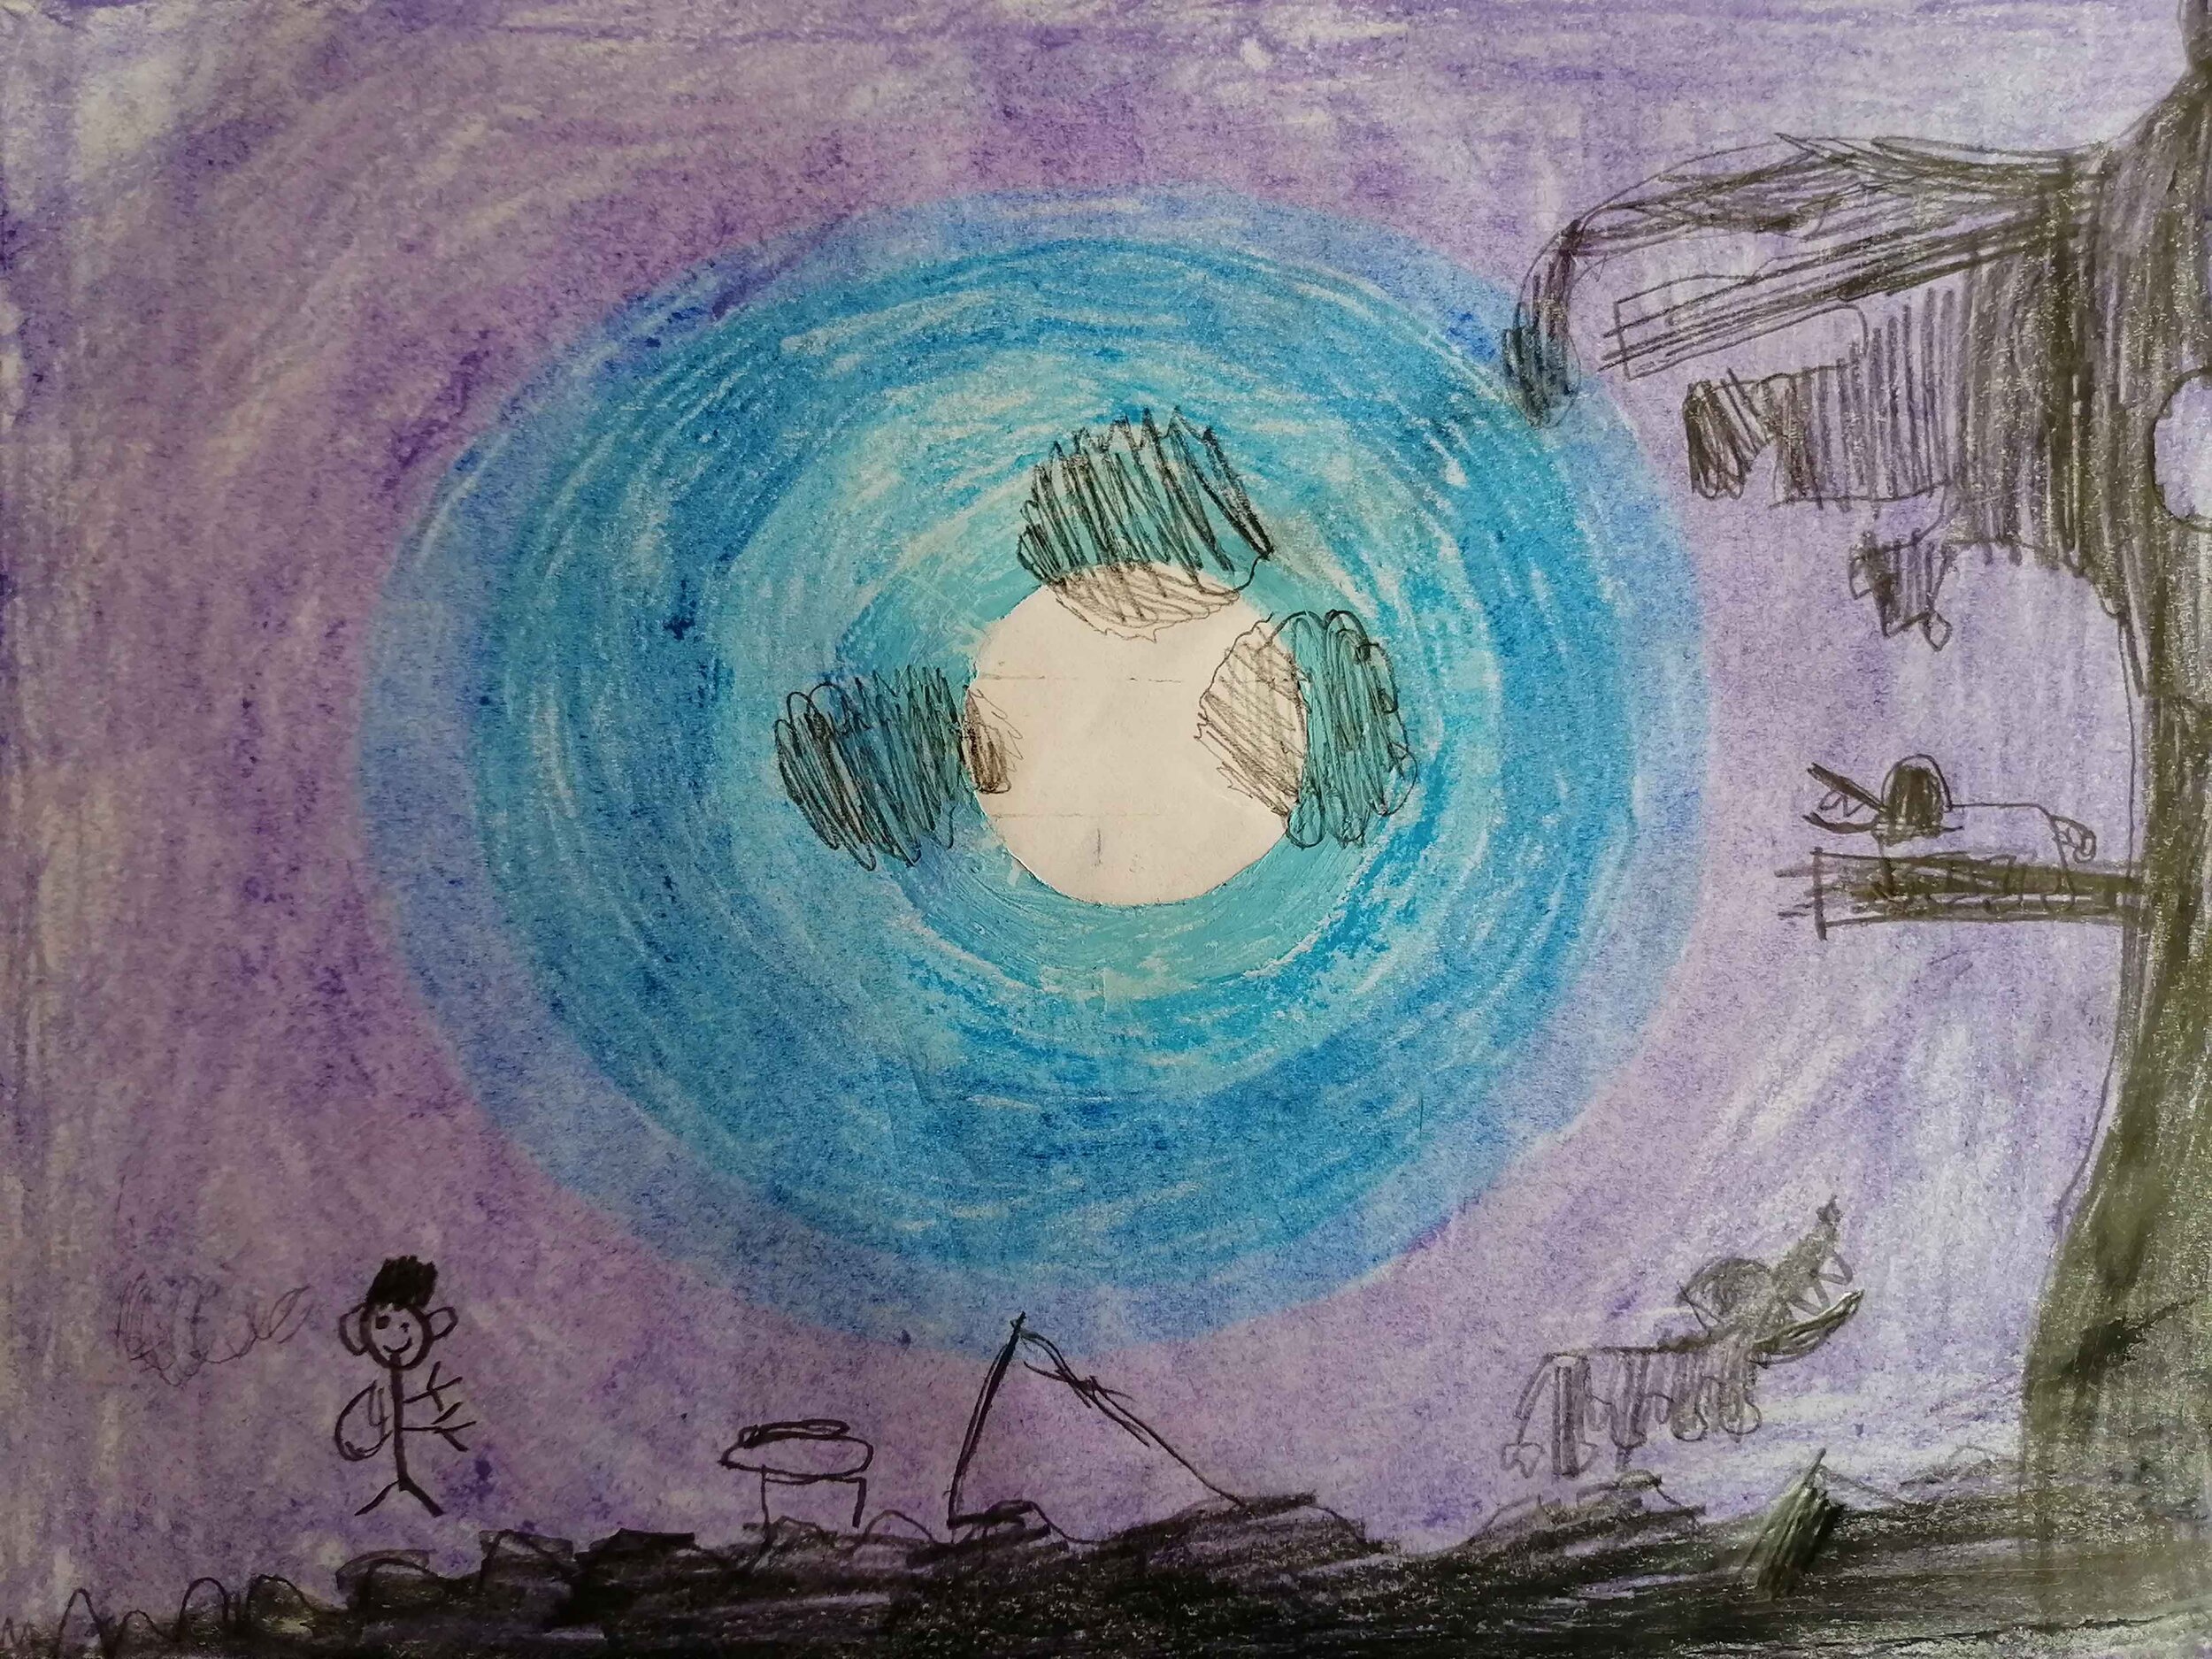 Moonlight night by Finn Dawson age 6